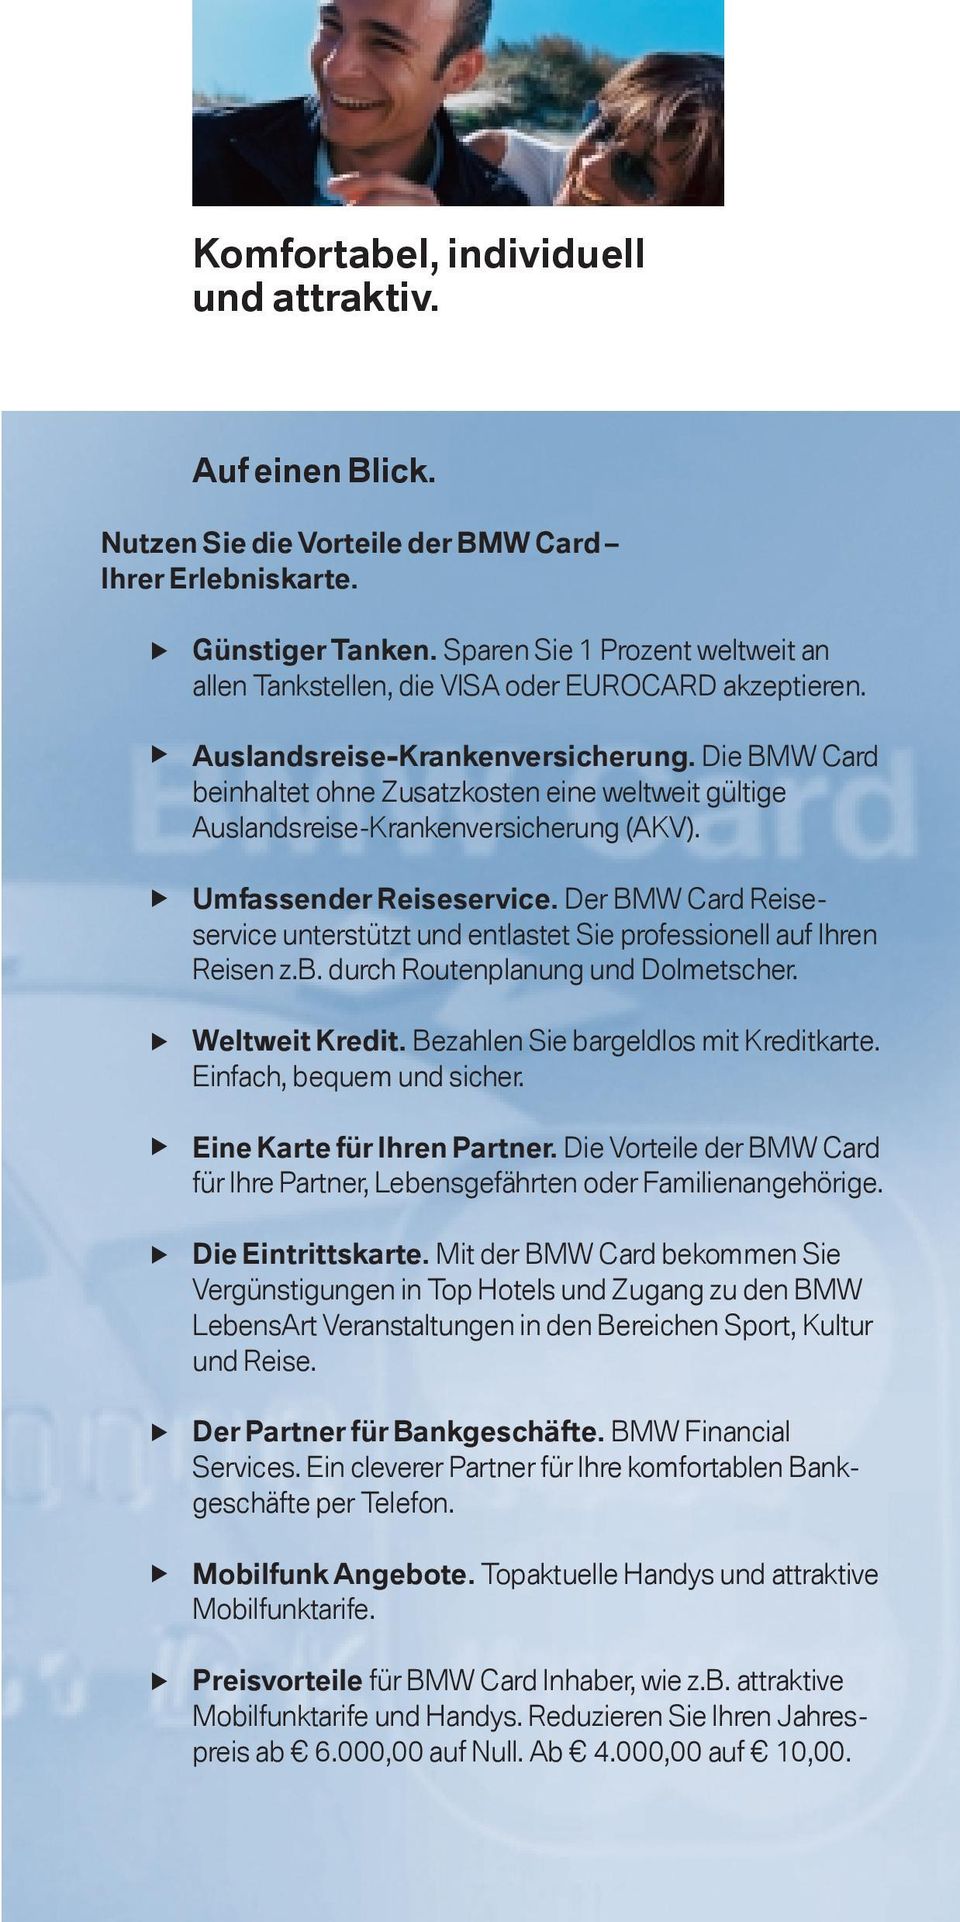 Die BMW Card beinhaltet ohne Zusatzkosten eine weltweit gültige Auslandsreise-Krankenversicherung (AKV). Umfassender Reiseservice.